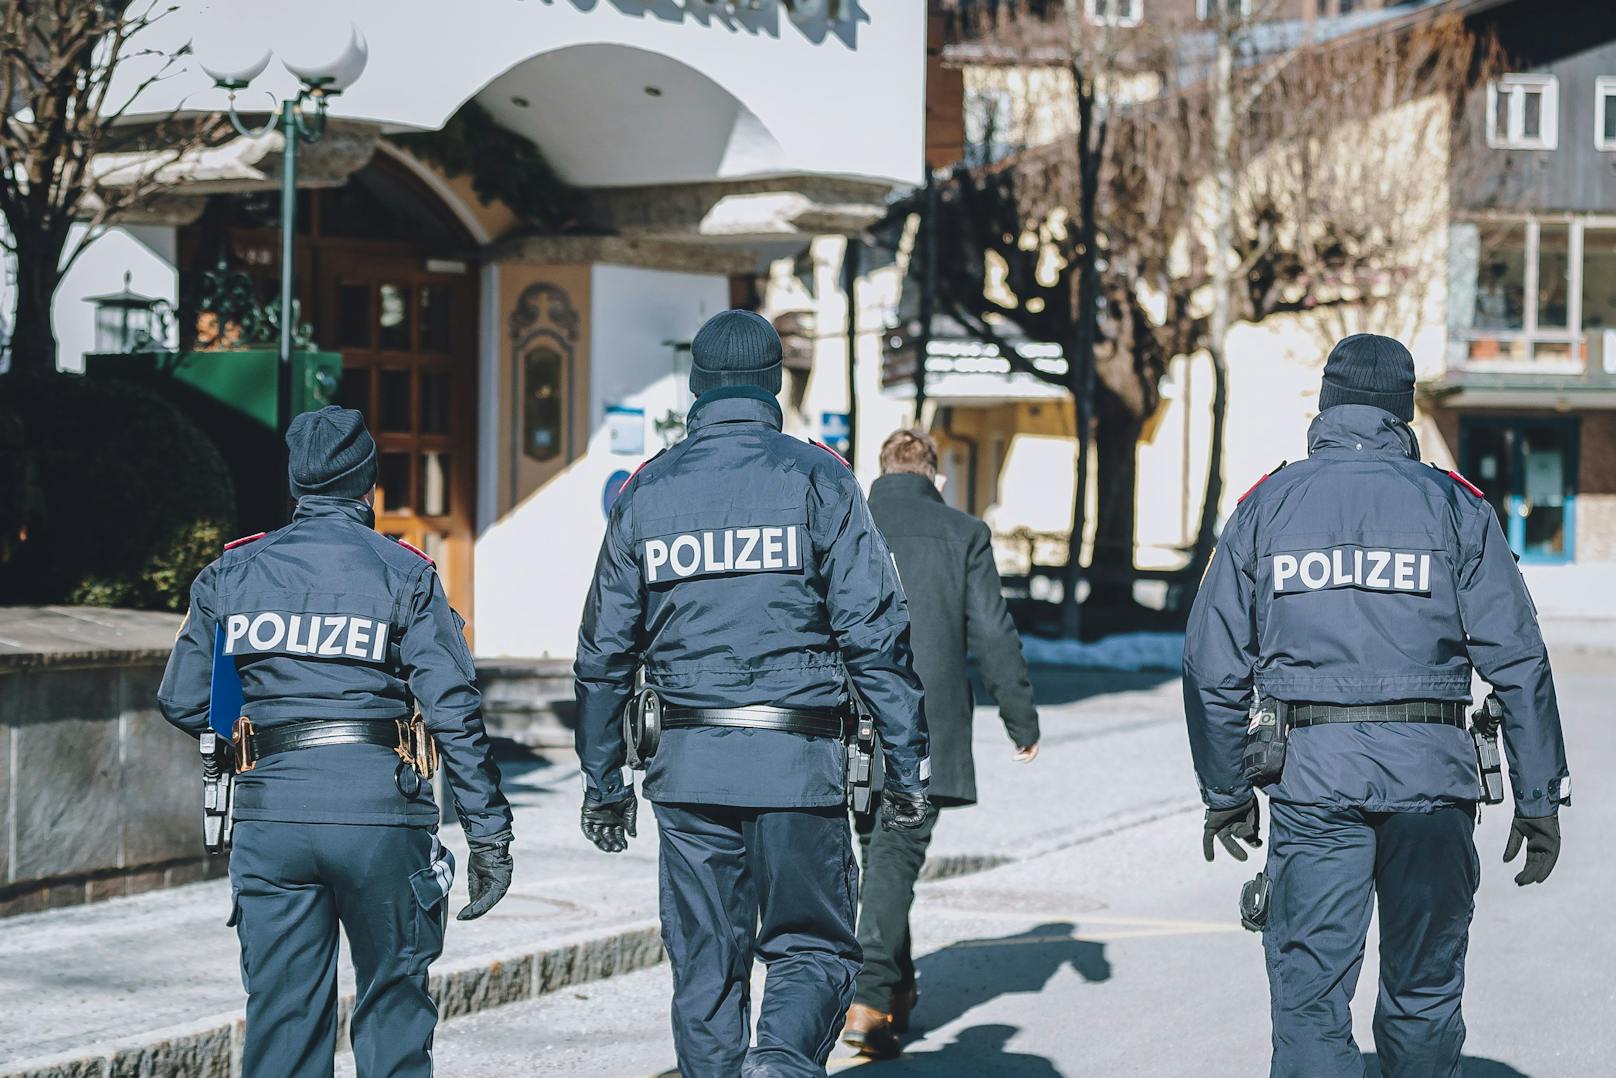 Polizisten sprengten in Linz eine Corona-Party, bei der 10 Personen in einem Schlafzimmer gefunden wurden.